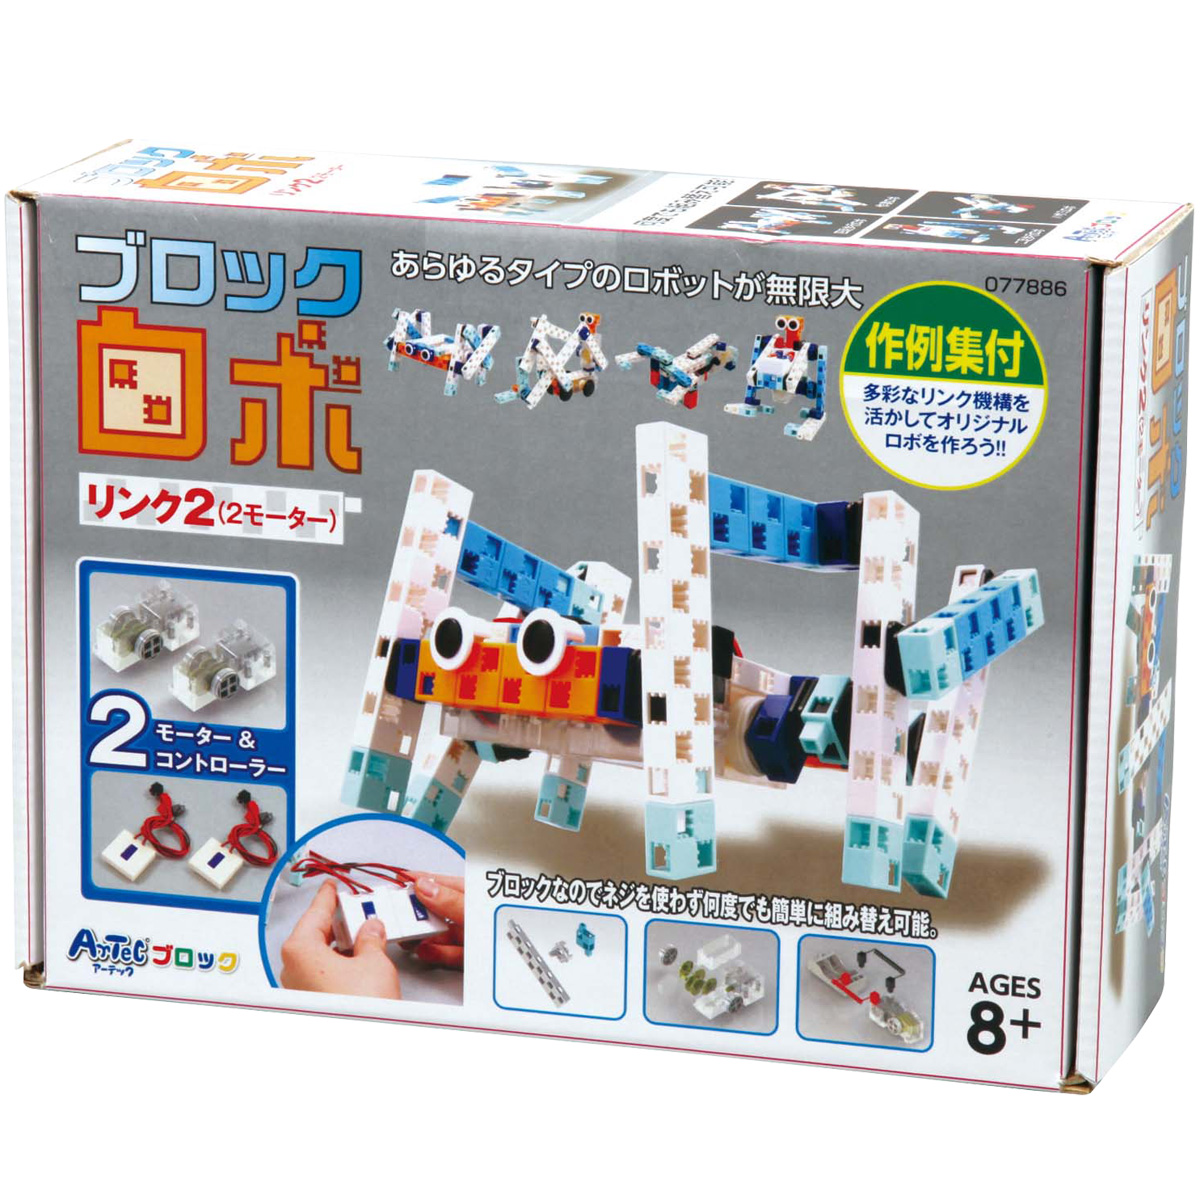 キッズ 子供 ジュニア 日本製 おもちゃ 高級品 アーテックブロック カラーブロック パズル ゲーム 玩具 知育玩具 教育 中学生 レゴ リンク2 パワーアップキット 自由研究 ロボット 小学生 ロボ 高学年 レゴブロックのように自由に遊べます 2モーター